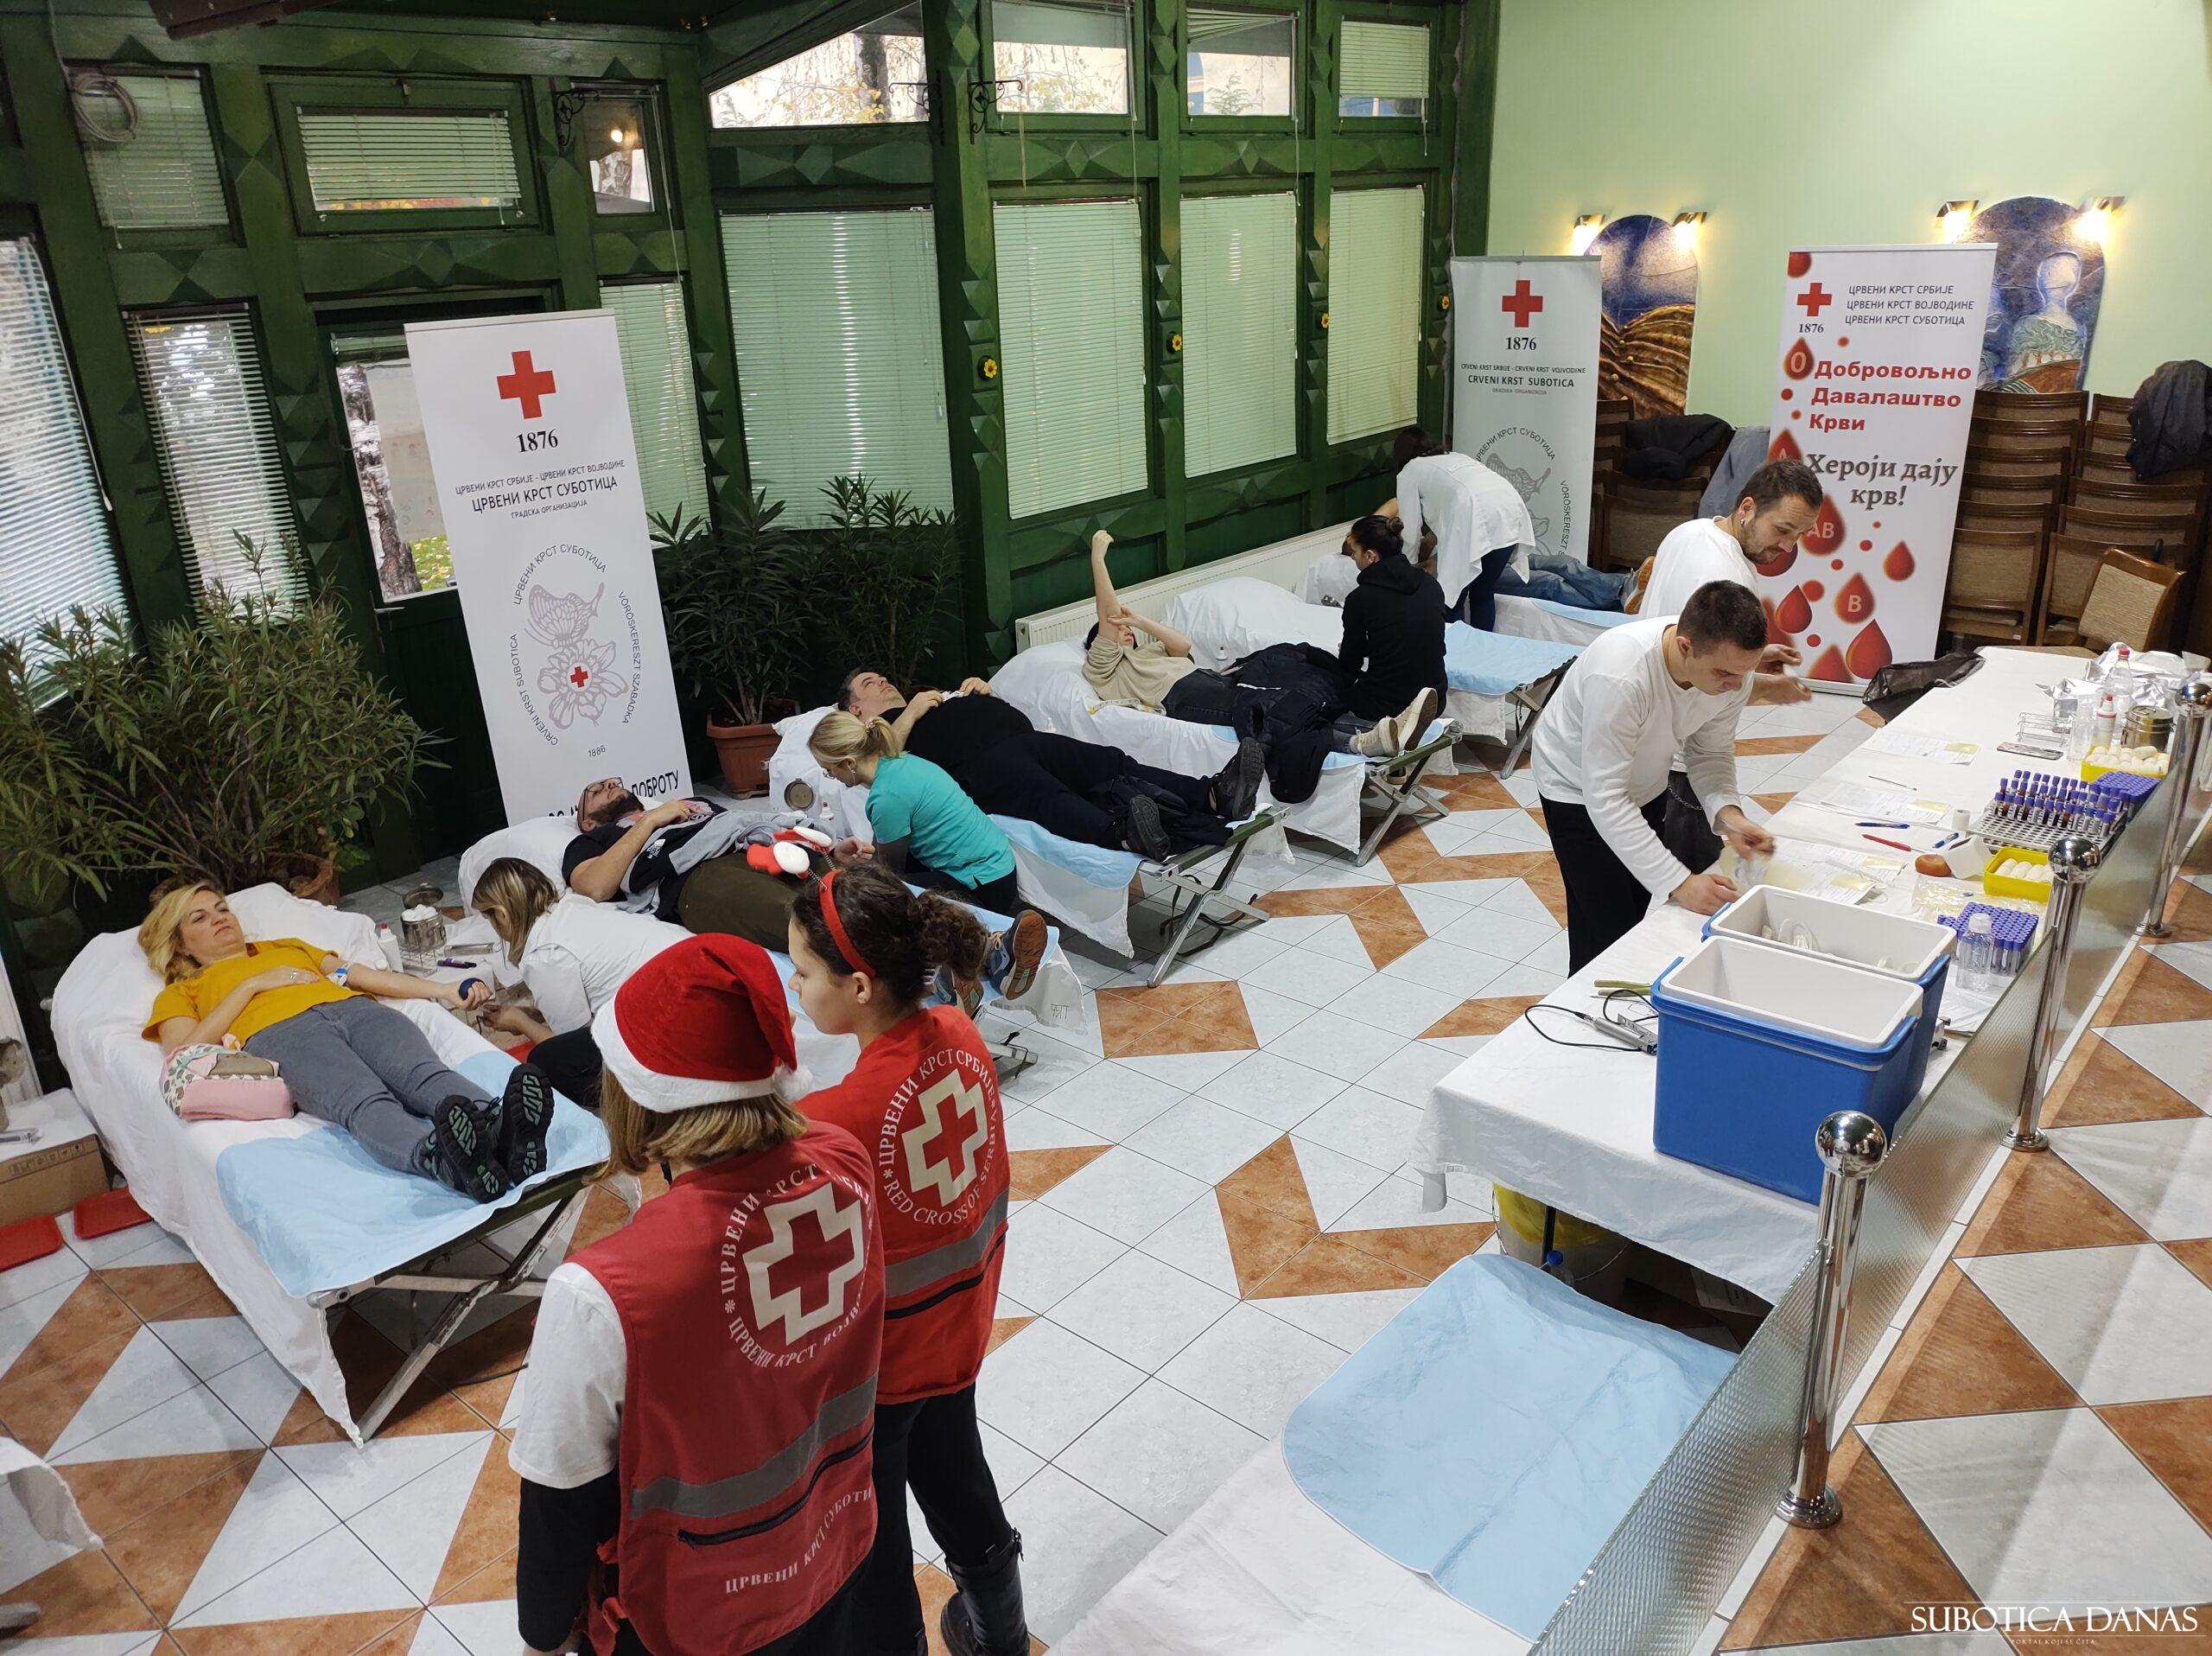 Akcija dobrovoljnog davanja krvi sutra u Čantaviru